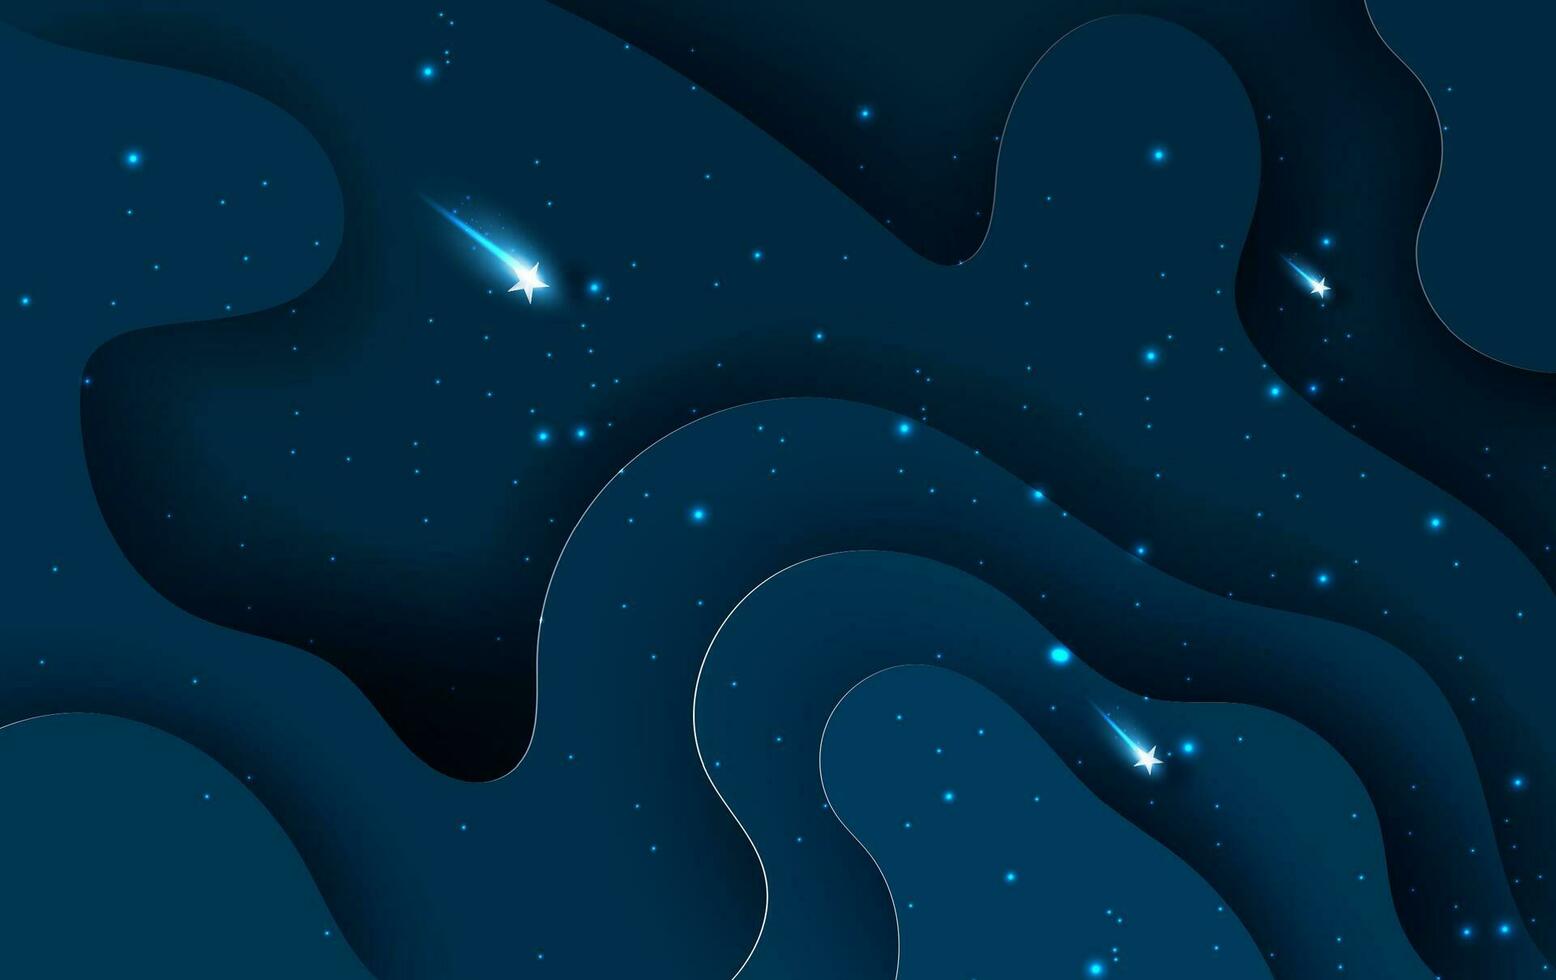 estrella otoño ligero en azul resumen curva capa.galaxia superficie espacio concepto en oscuro noche fondo.creativo papel cortar y arte estilo.gráfico mínimo decoración elemento negocio. vector ilustración